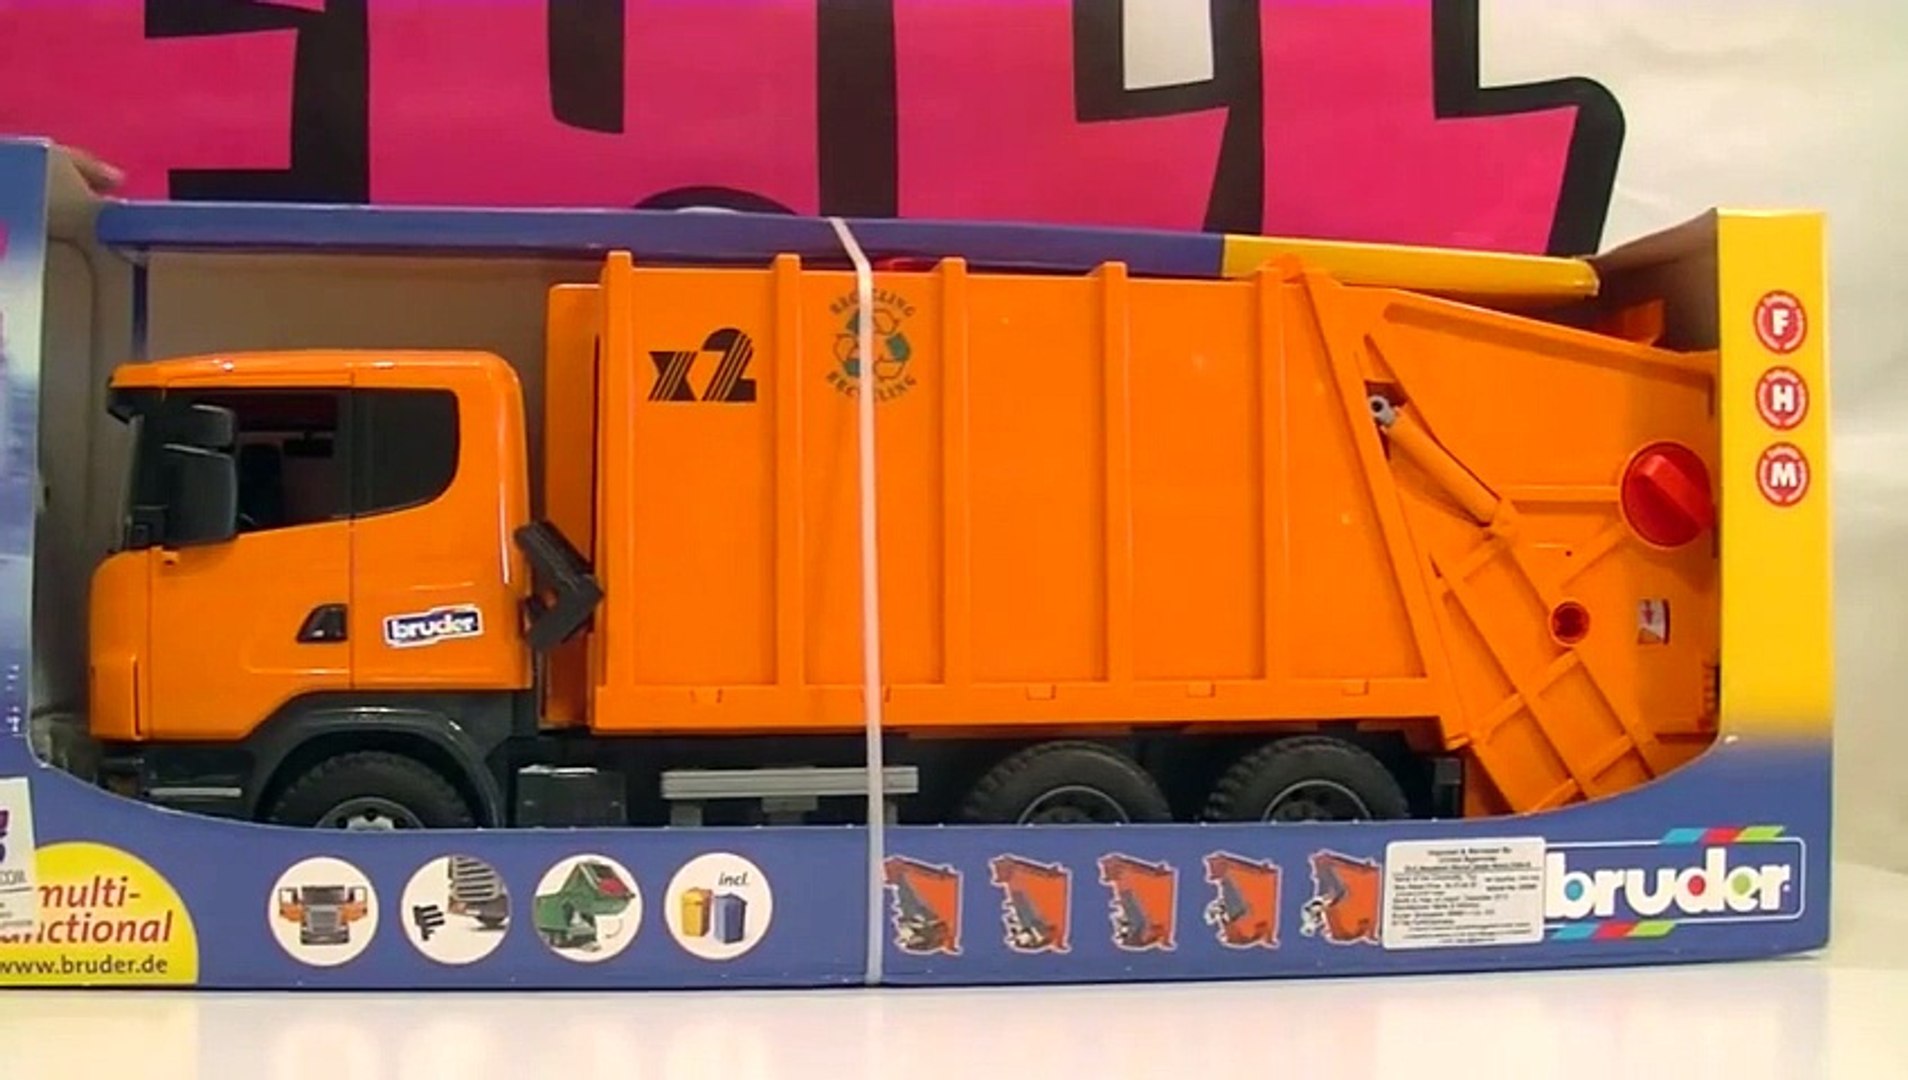 garbage truck toy videos